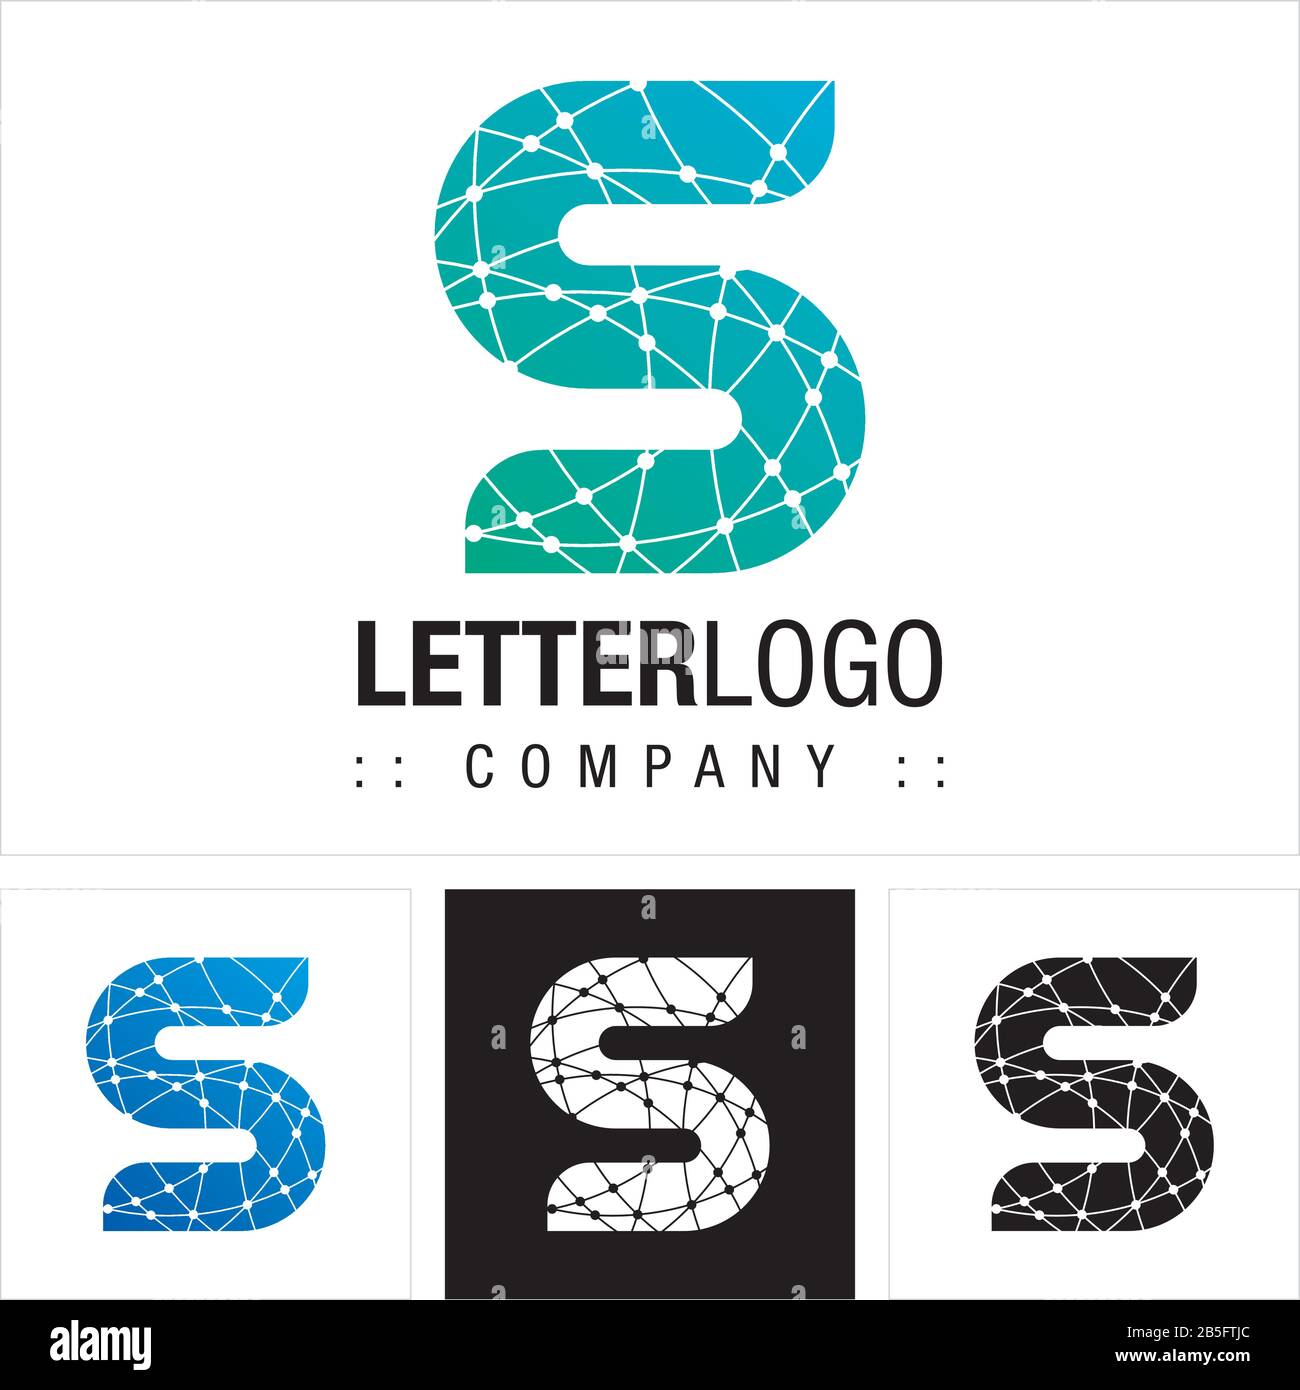 Lettre S (Typographie) Vector Symbol Company Logo (Logotype). Illustration De L'Icône Style De Technologie Des Connecteurs De Carte Mère. Concept D'Identité Élégant Illustration de Vecteur